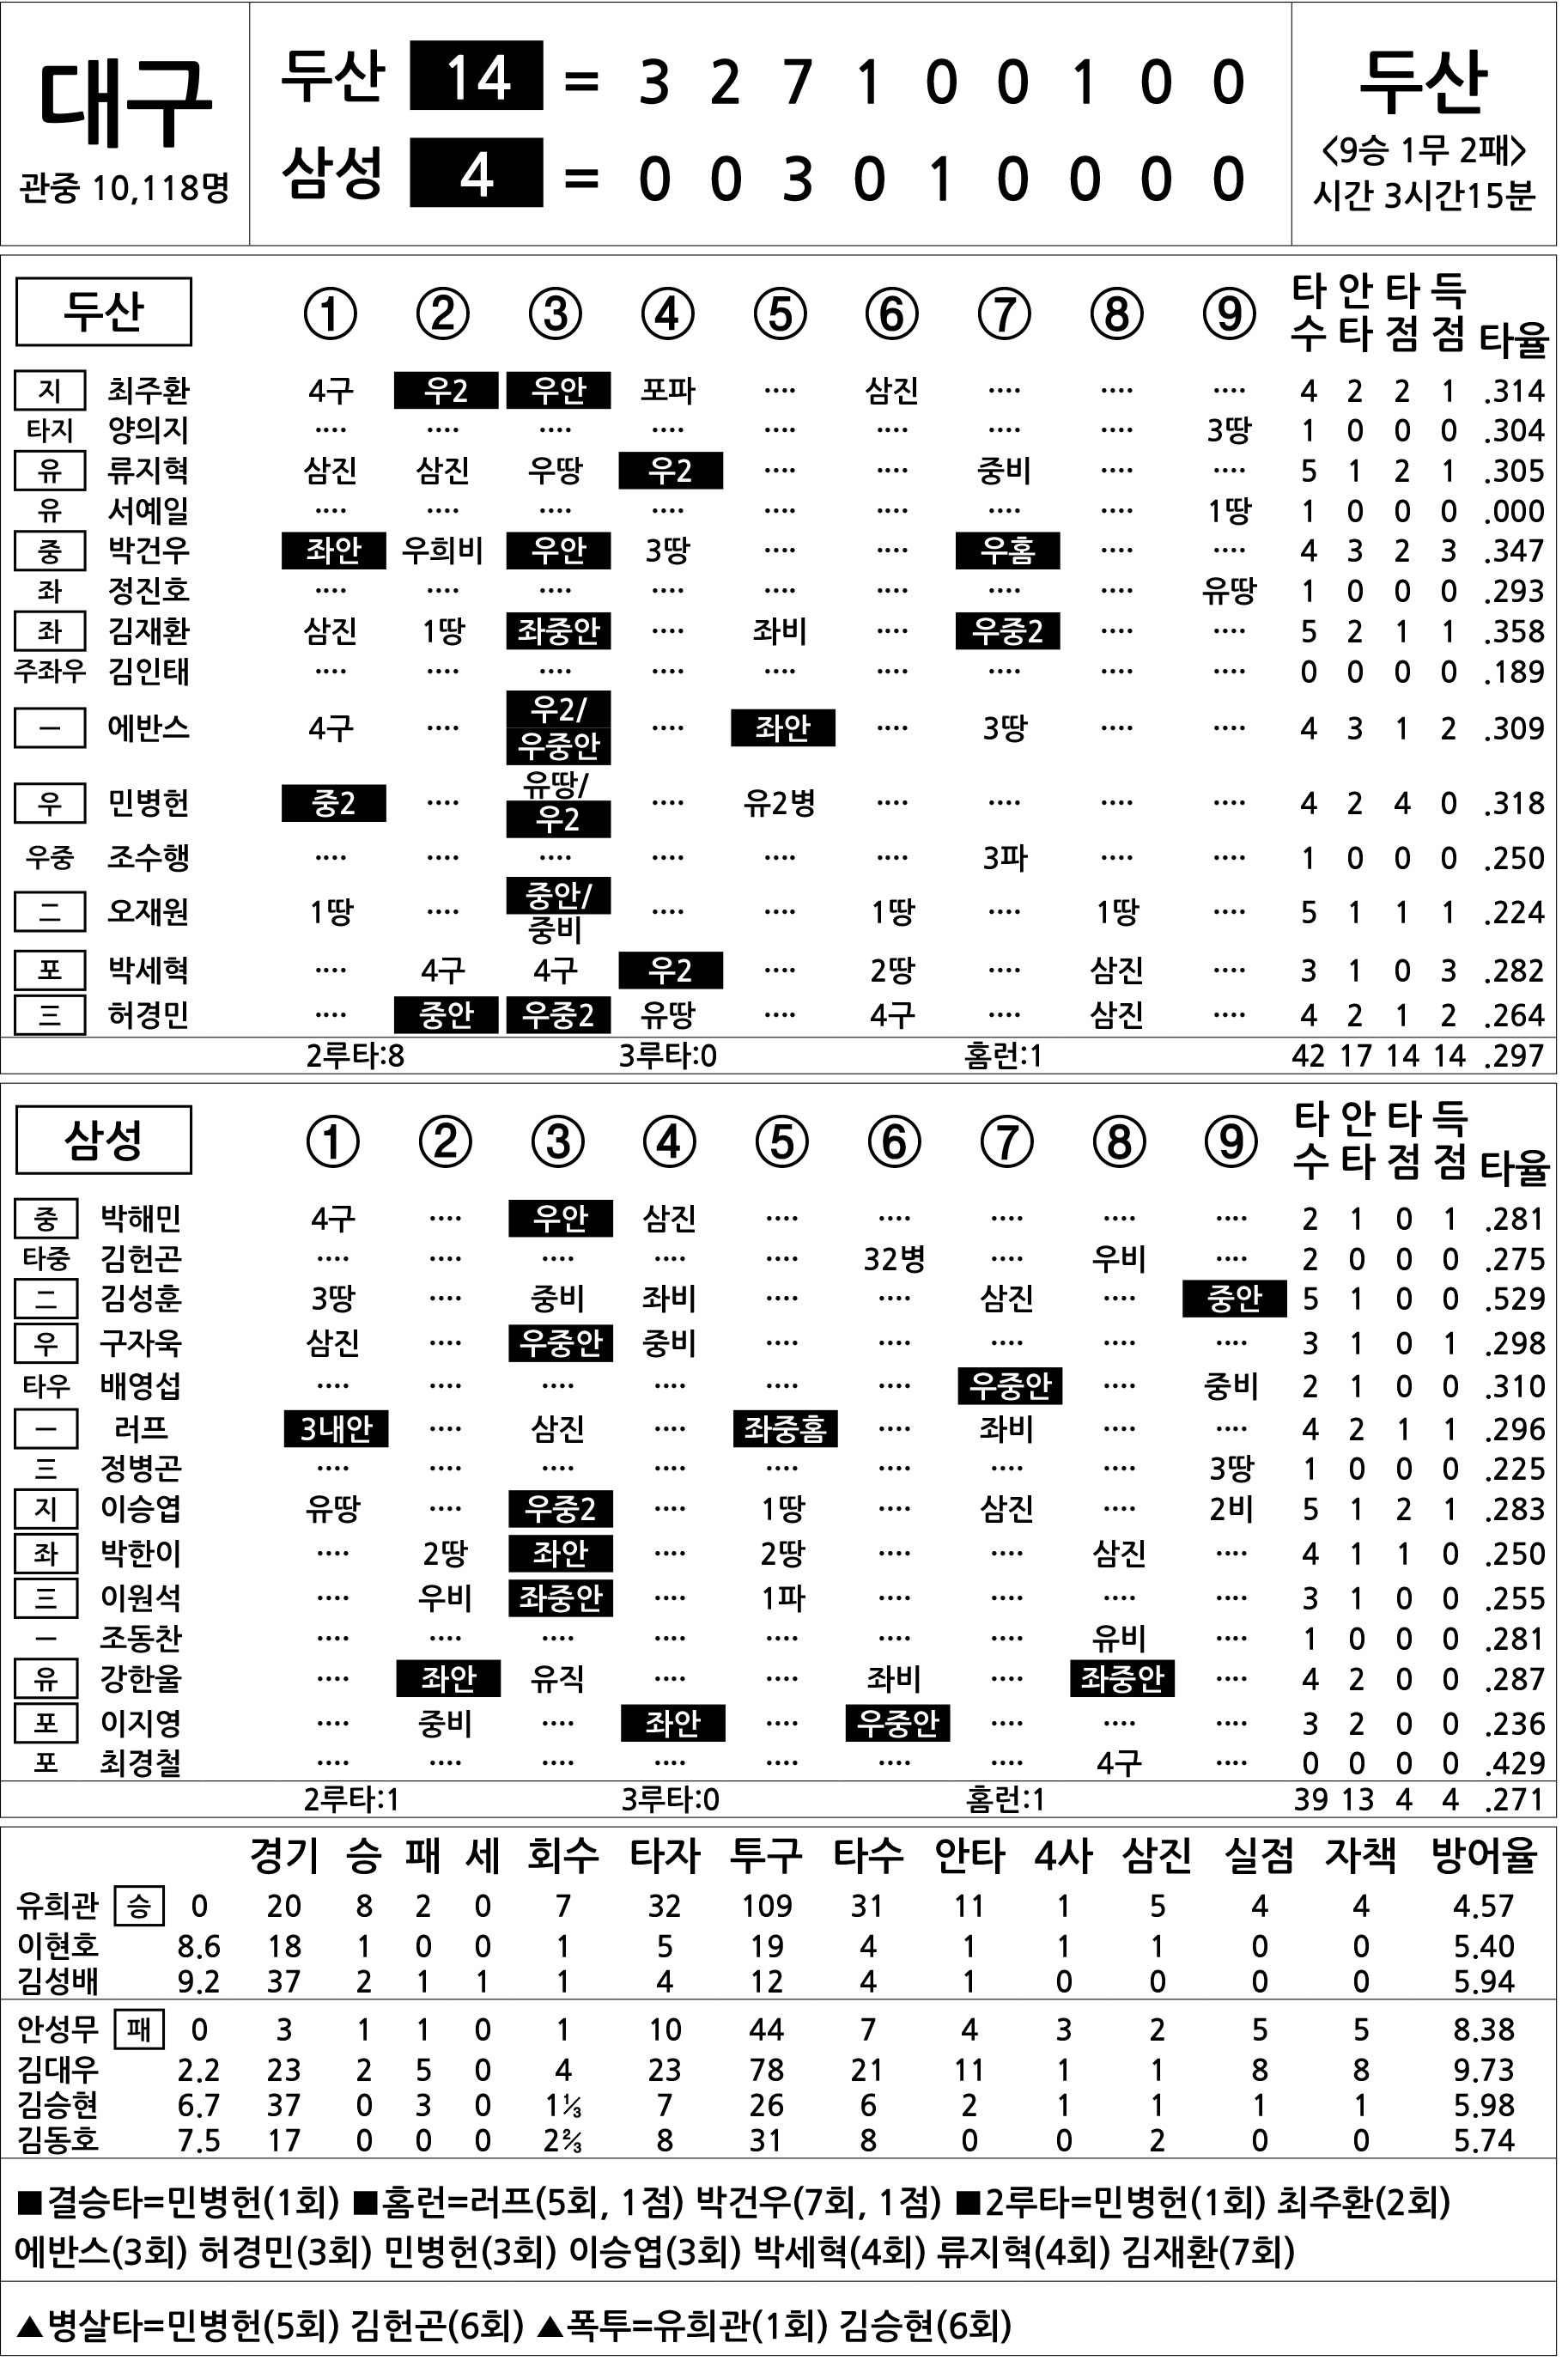  두산 vs 삼성 (8월 3일)